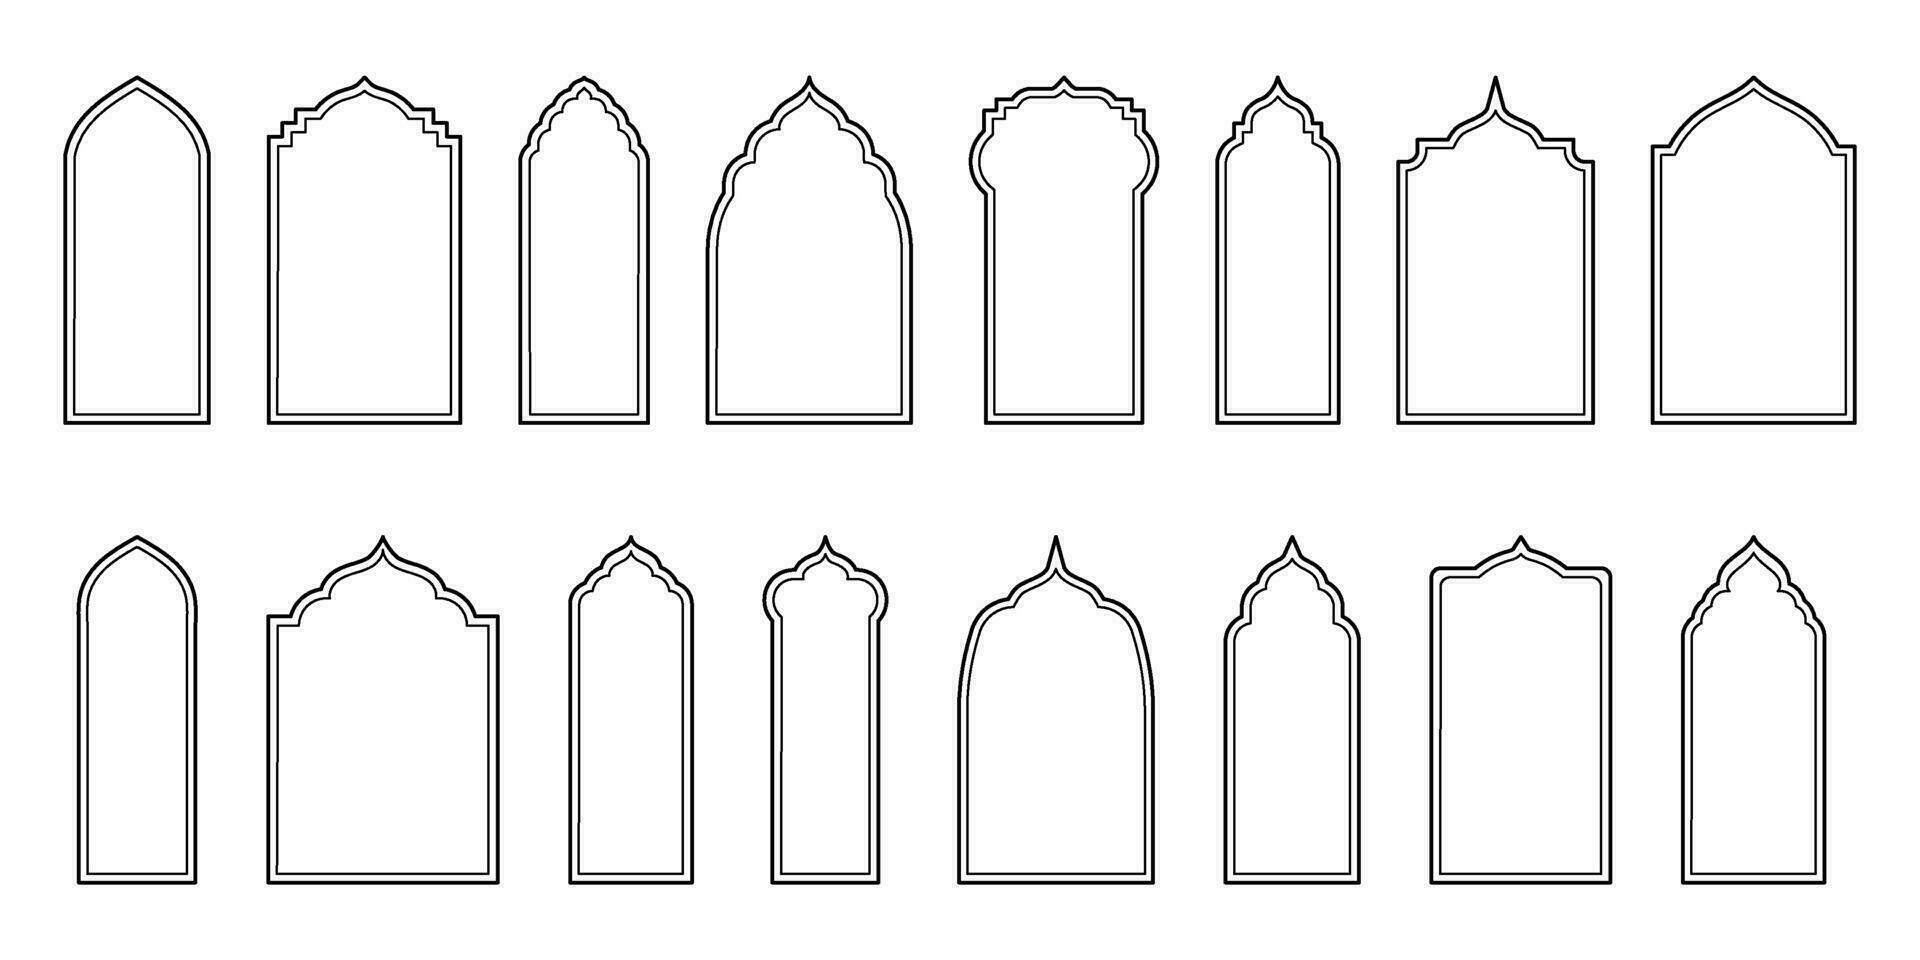 minimalista design con orientale stile finestre e archi. moderno schema migliorare il eleganza di islamico architettonico elementi vettore